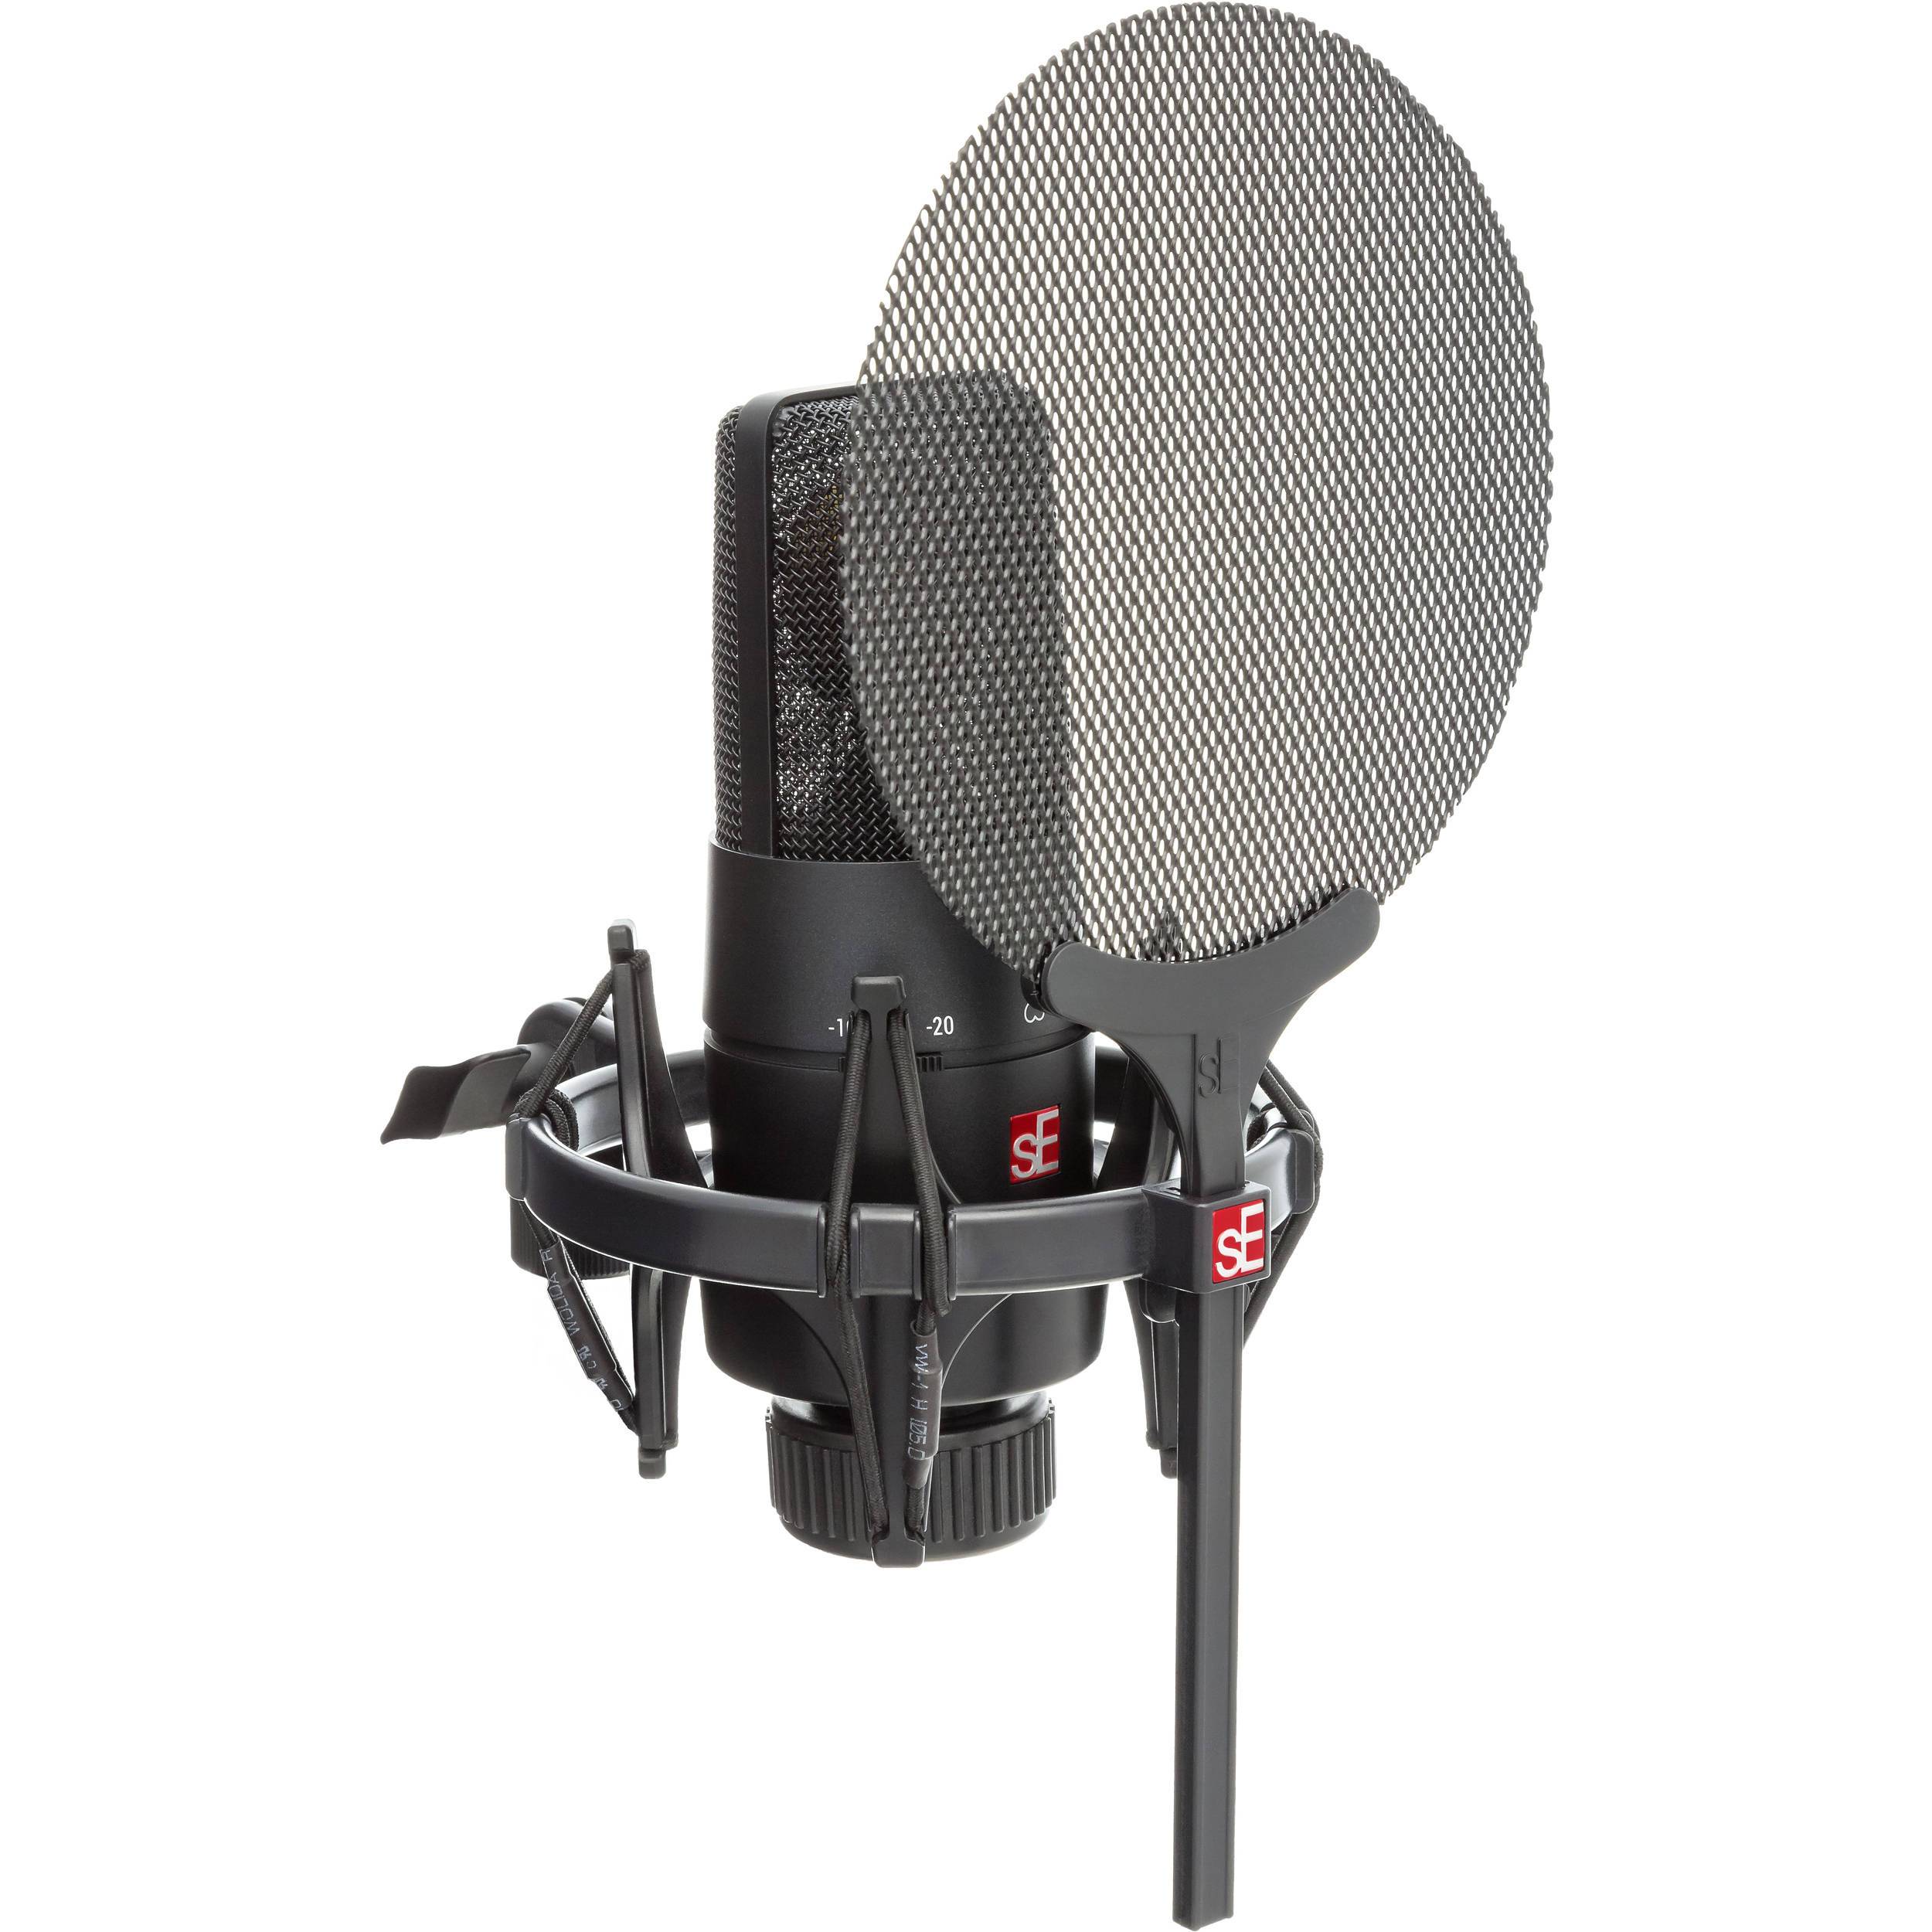 sE Electronics X1 S Vocal Micrófono de Condensador (Incluye Shockmount, Filtro Antipop y Cable) Micrófonos de Condensador sE Electronics 